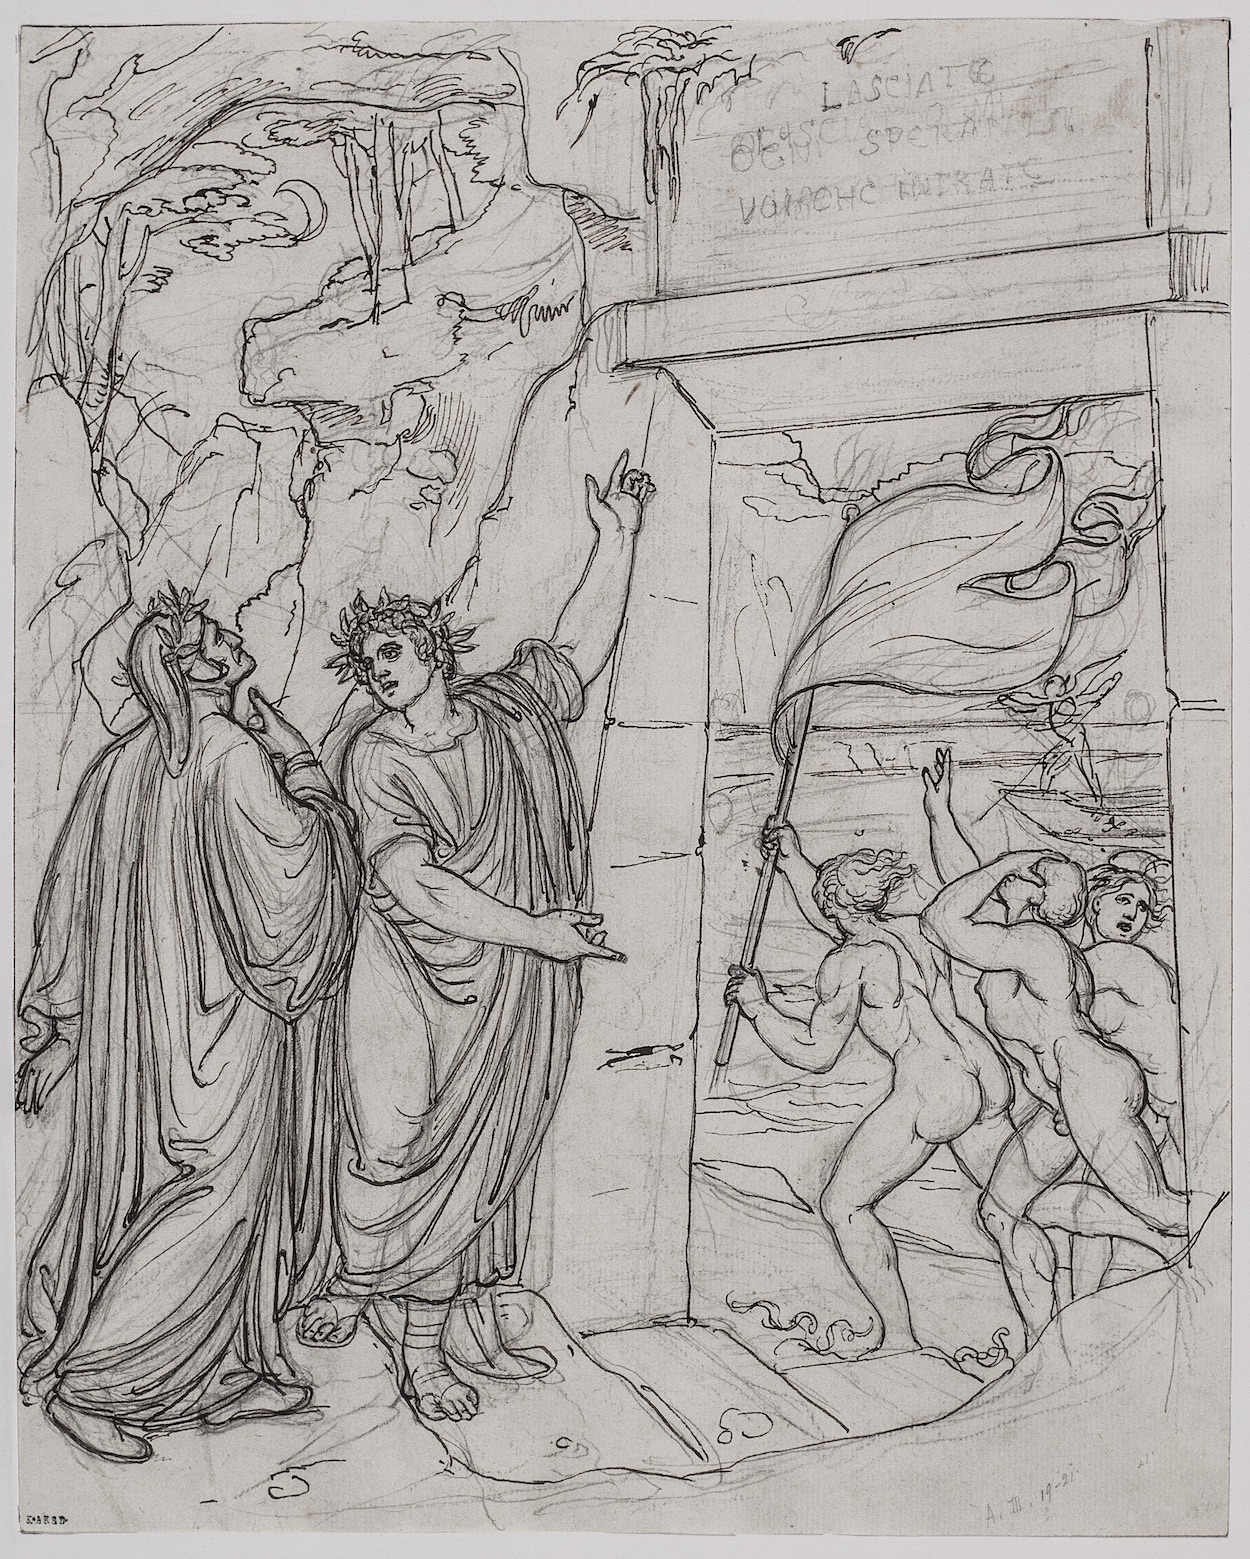 Voor de Poorten van de Hel, Dante: De Goddelijke Komedie, Inferno, Canto III by Joseph Anton Koch - c. 1803 Akademie der bildenden Künste, Wien